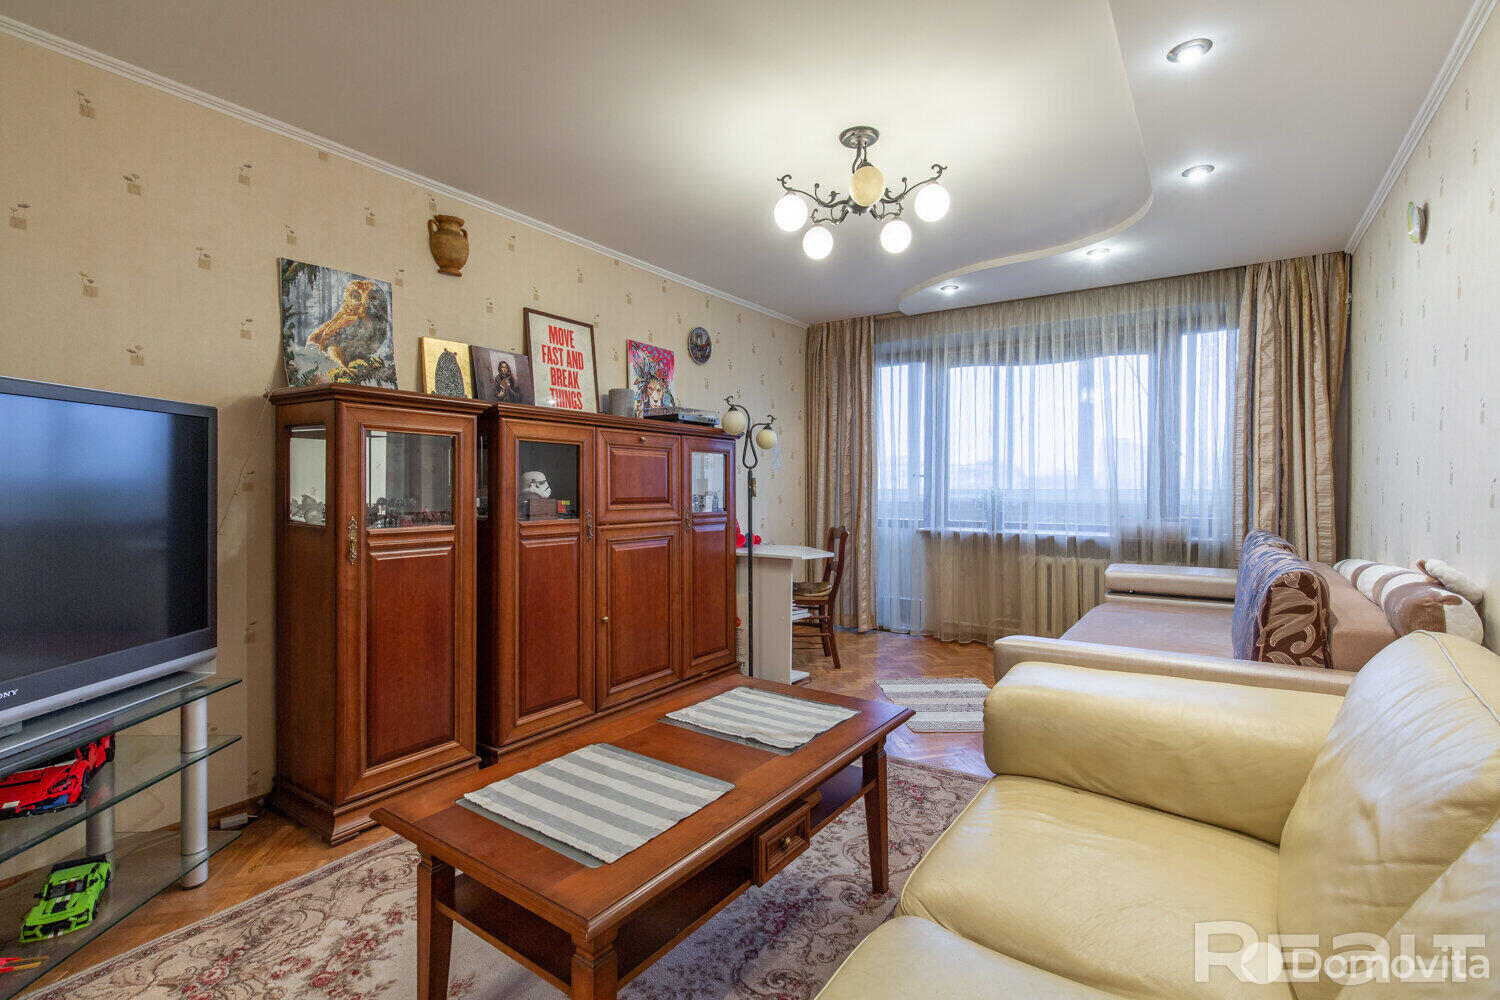 квартира, Минск, ул. Цнянская, д. 13, стоимость продажи 344 058 р.